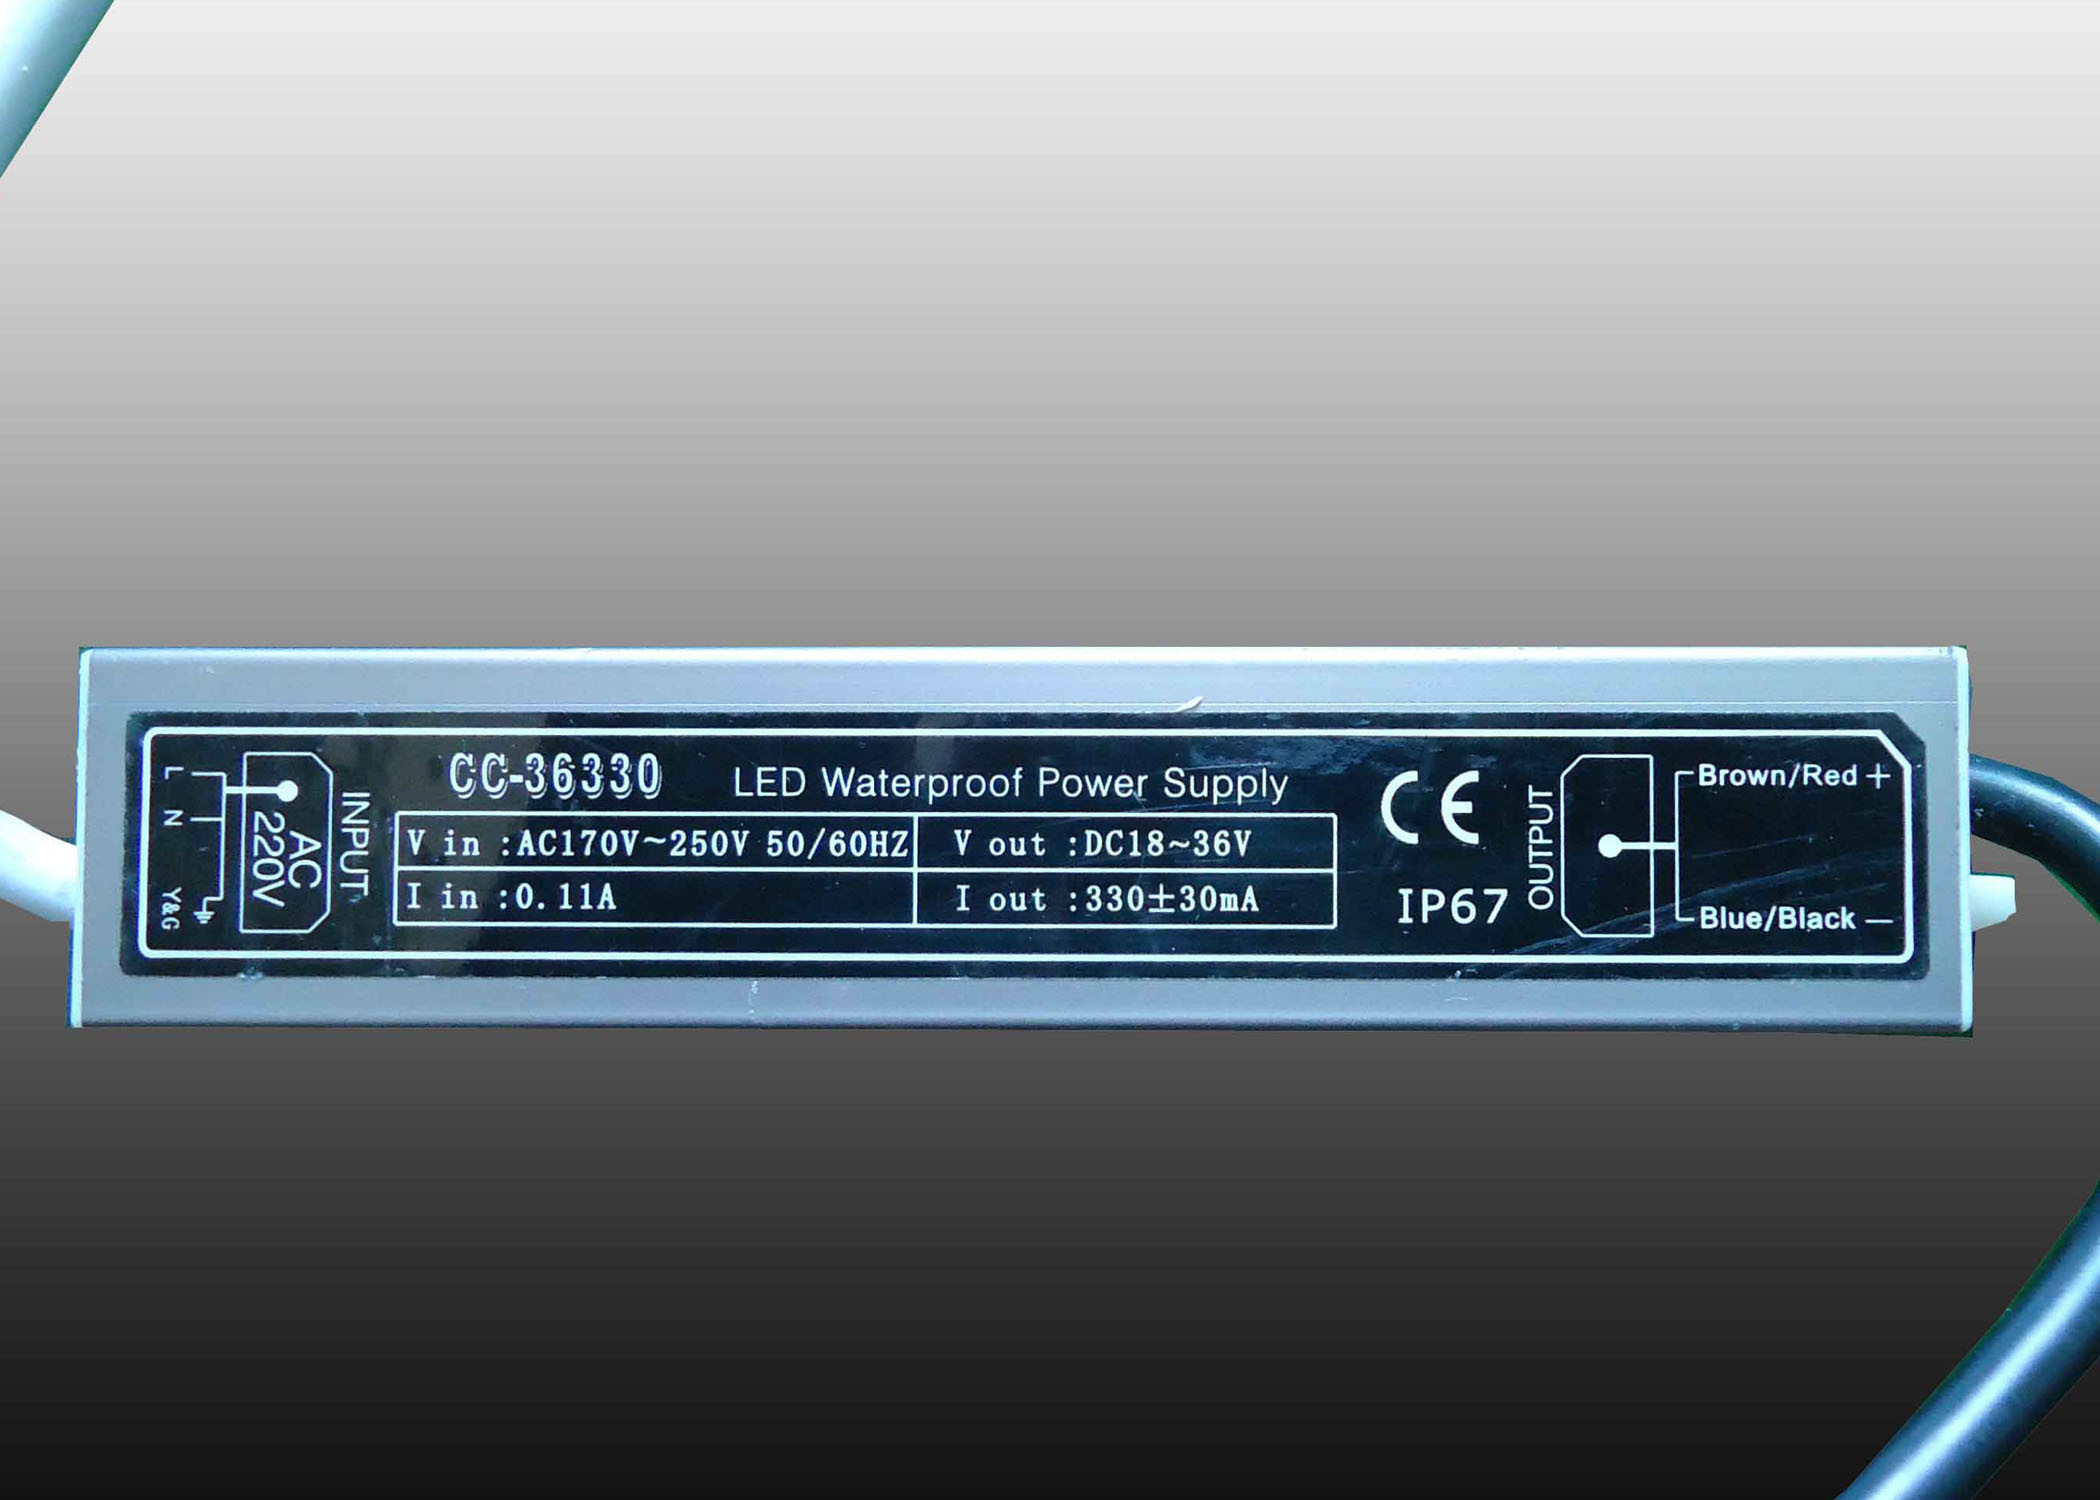 แถบไฟ LED เชิงเส้นชิปเอพิสตาร์ RGB 12W พร้อม IP65 SMD3535